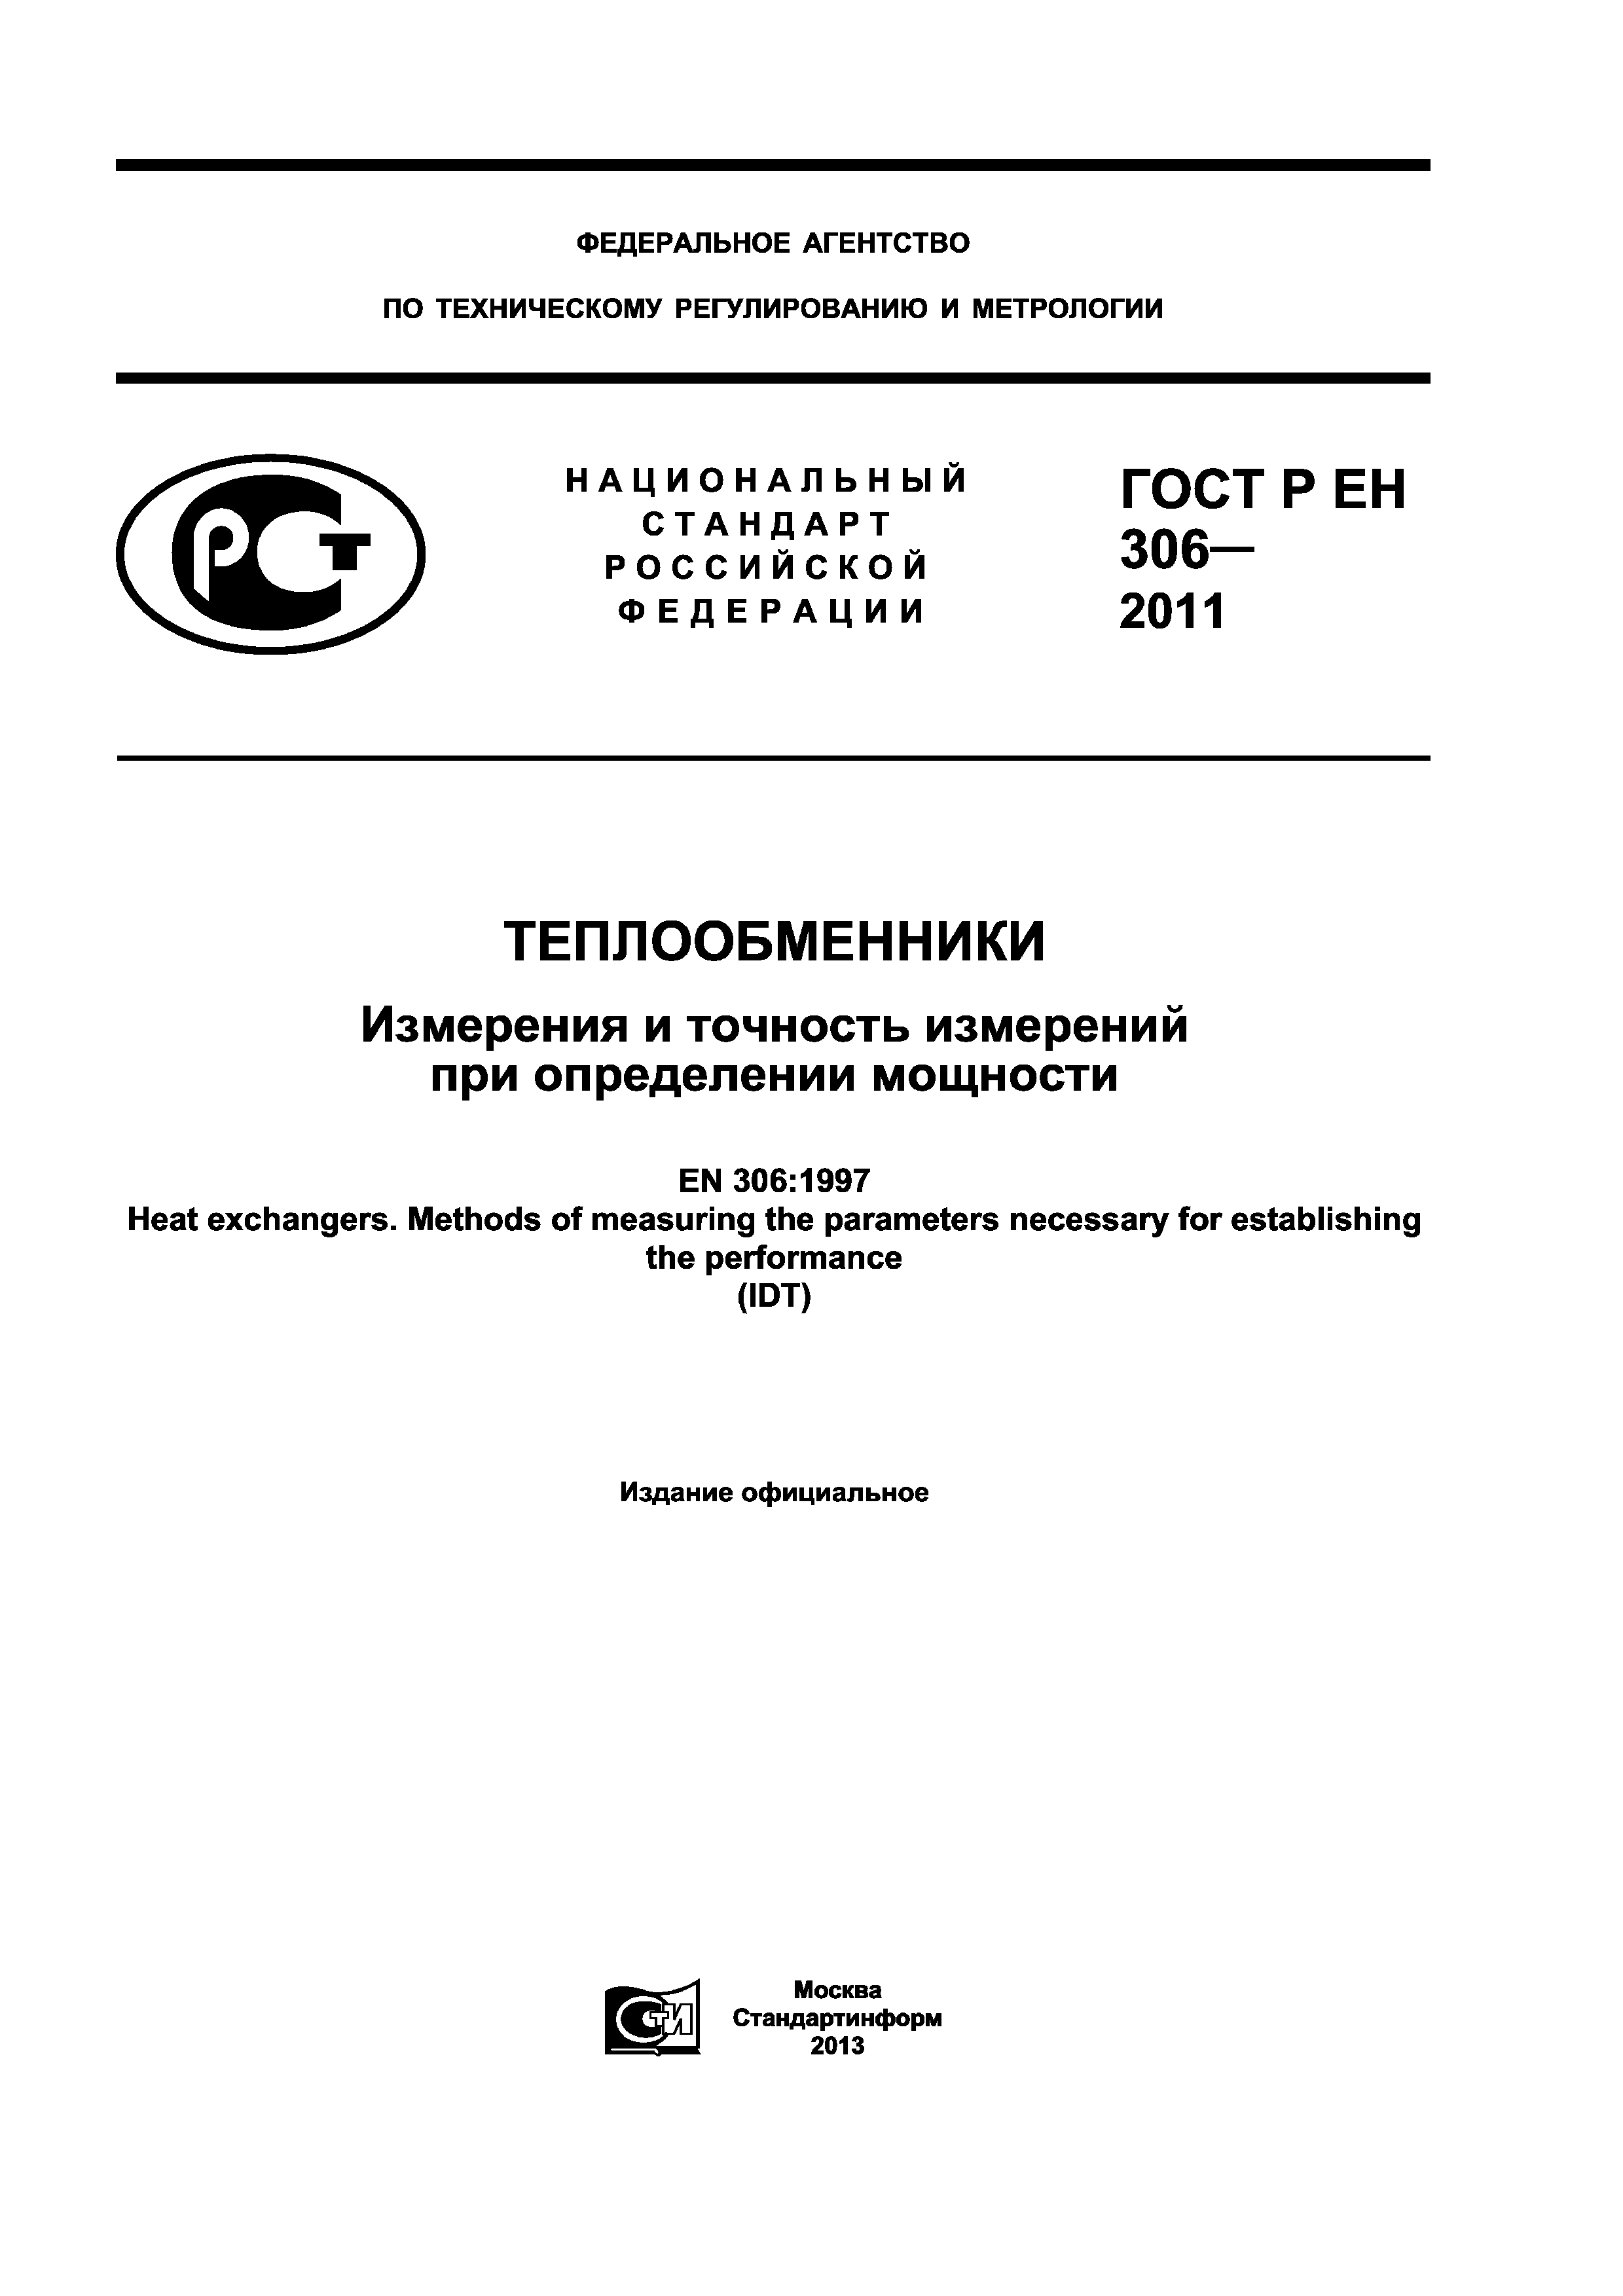 ГОСТ Р ЕН 306-2011